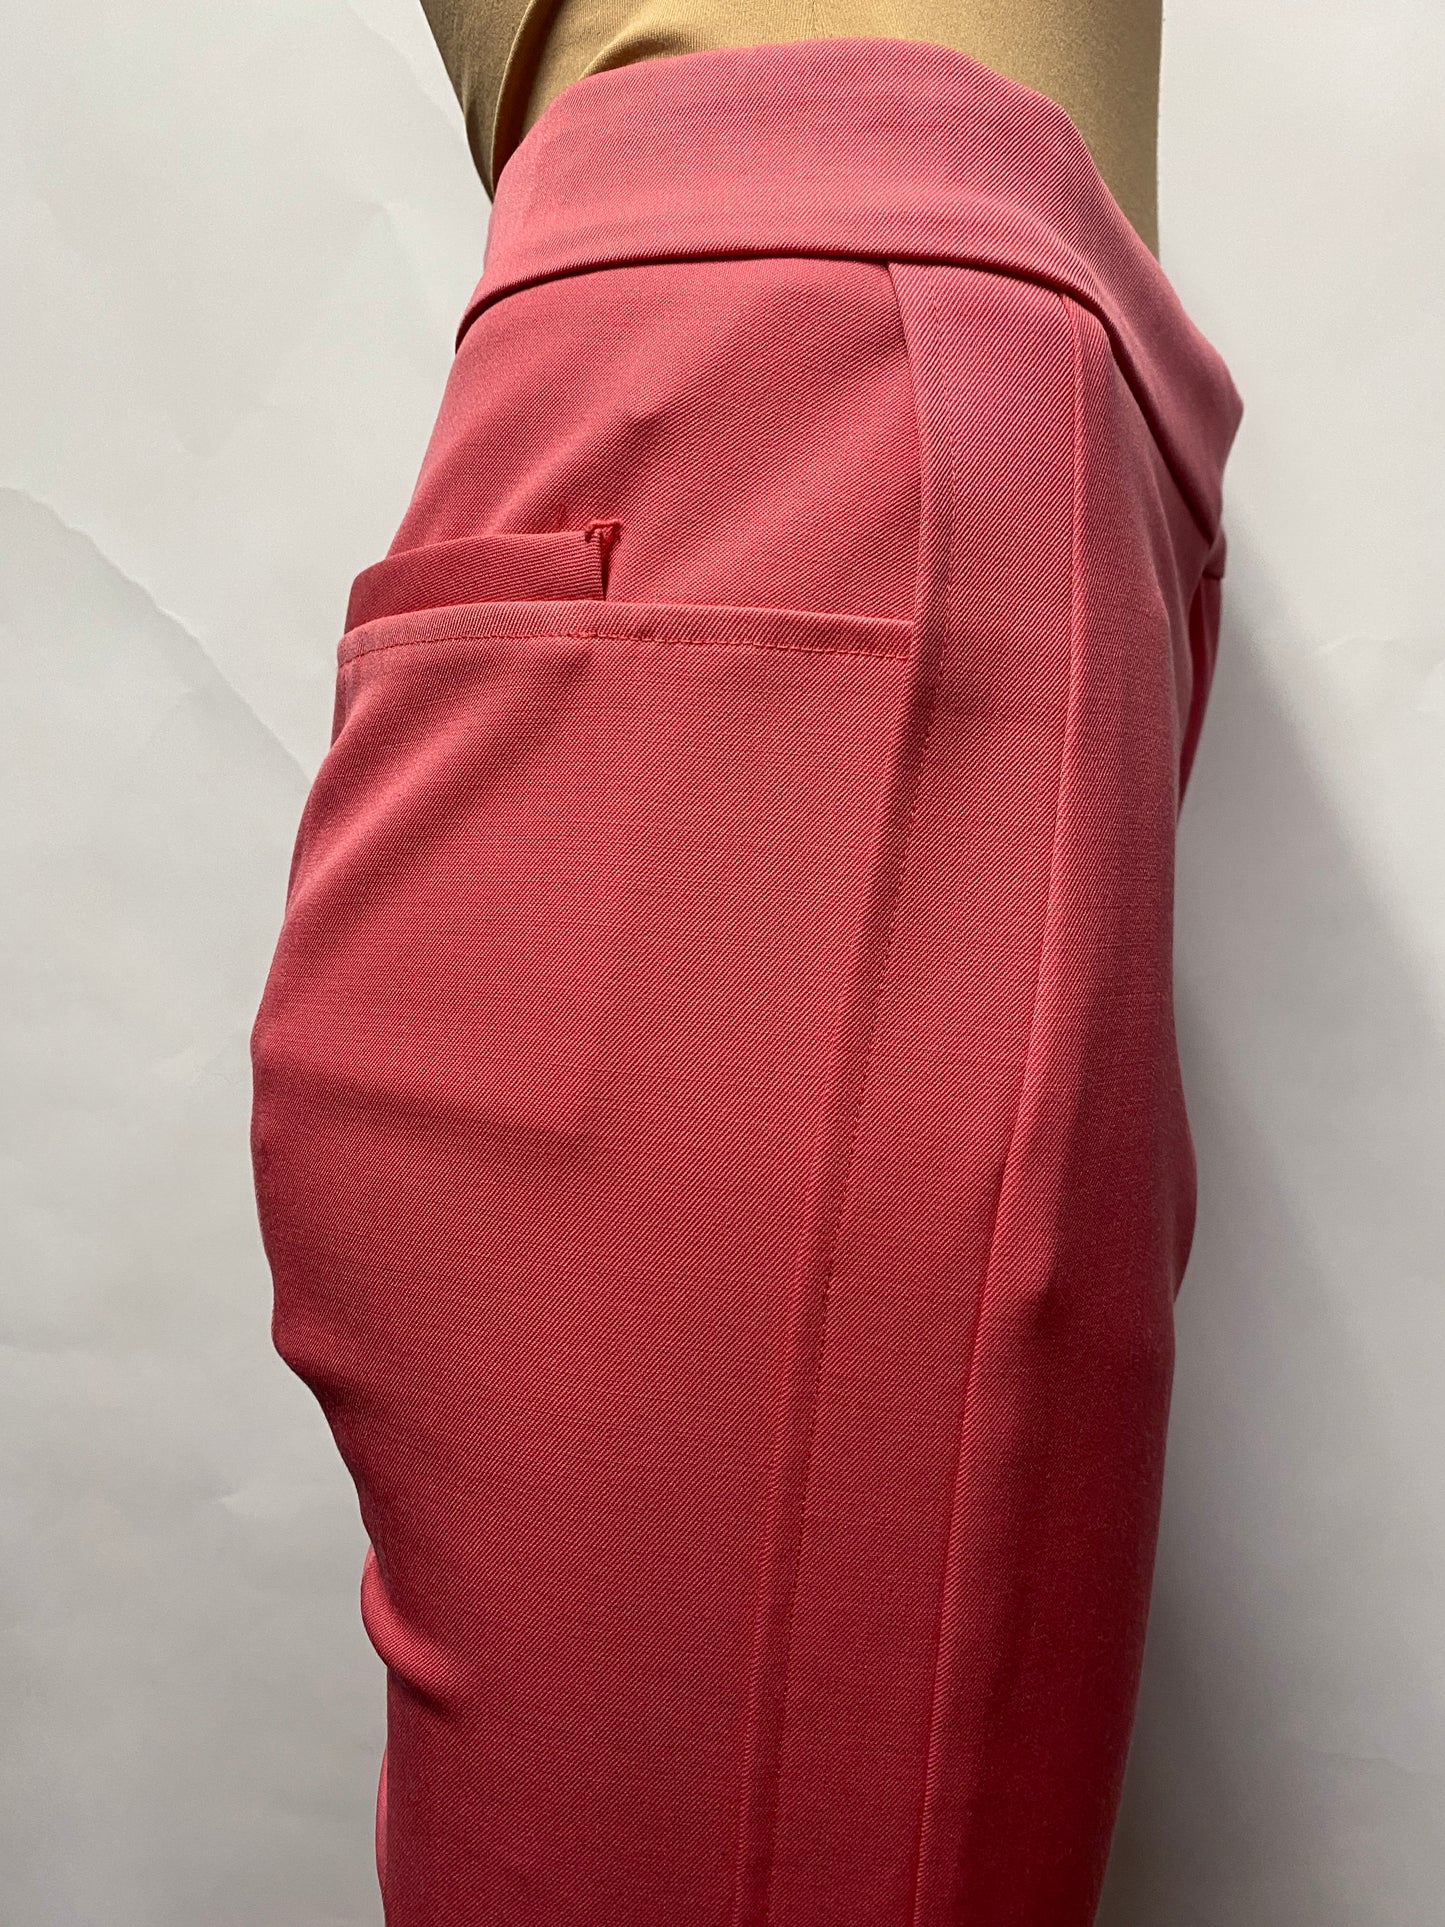 Oscar De La Renta Pink Tailored Trousers